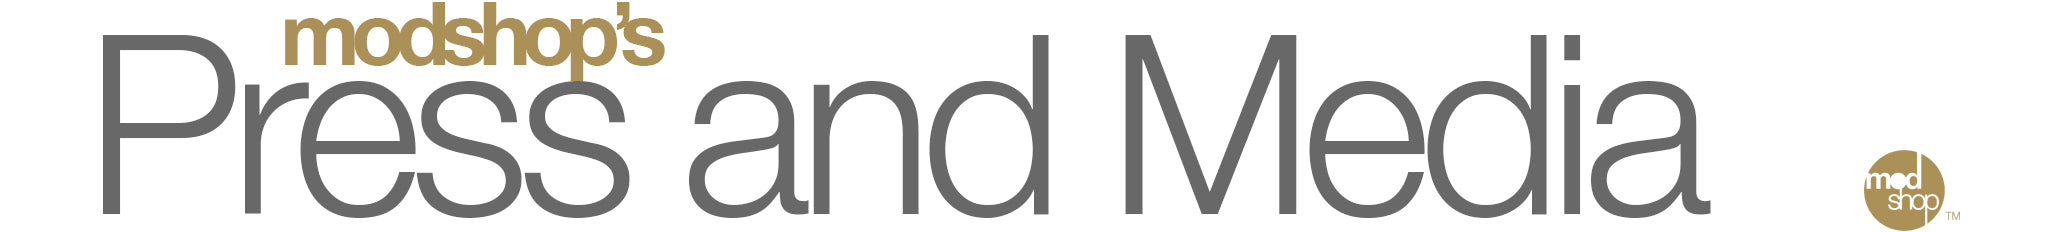 press and media header logo